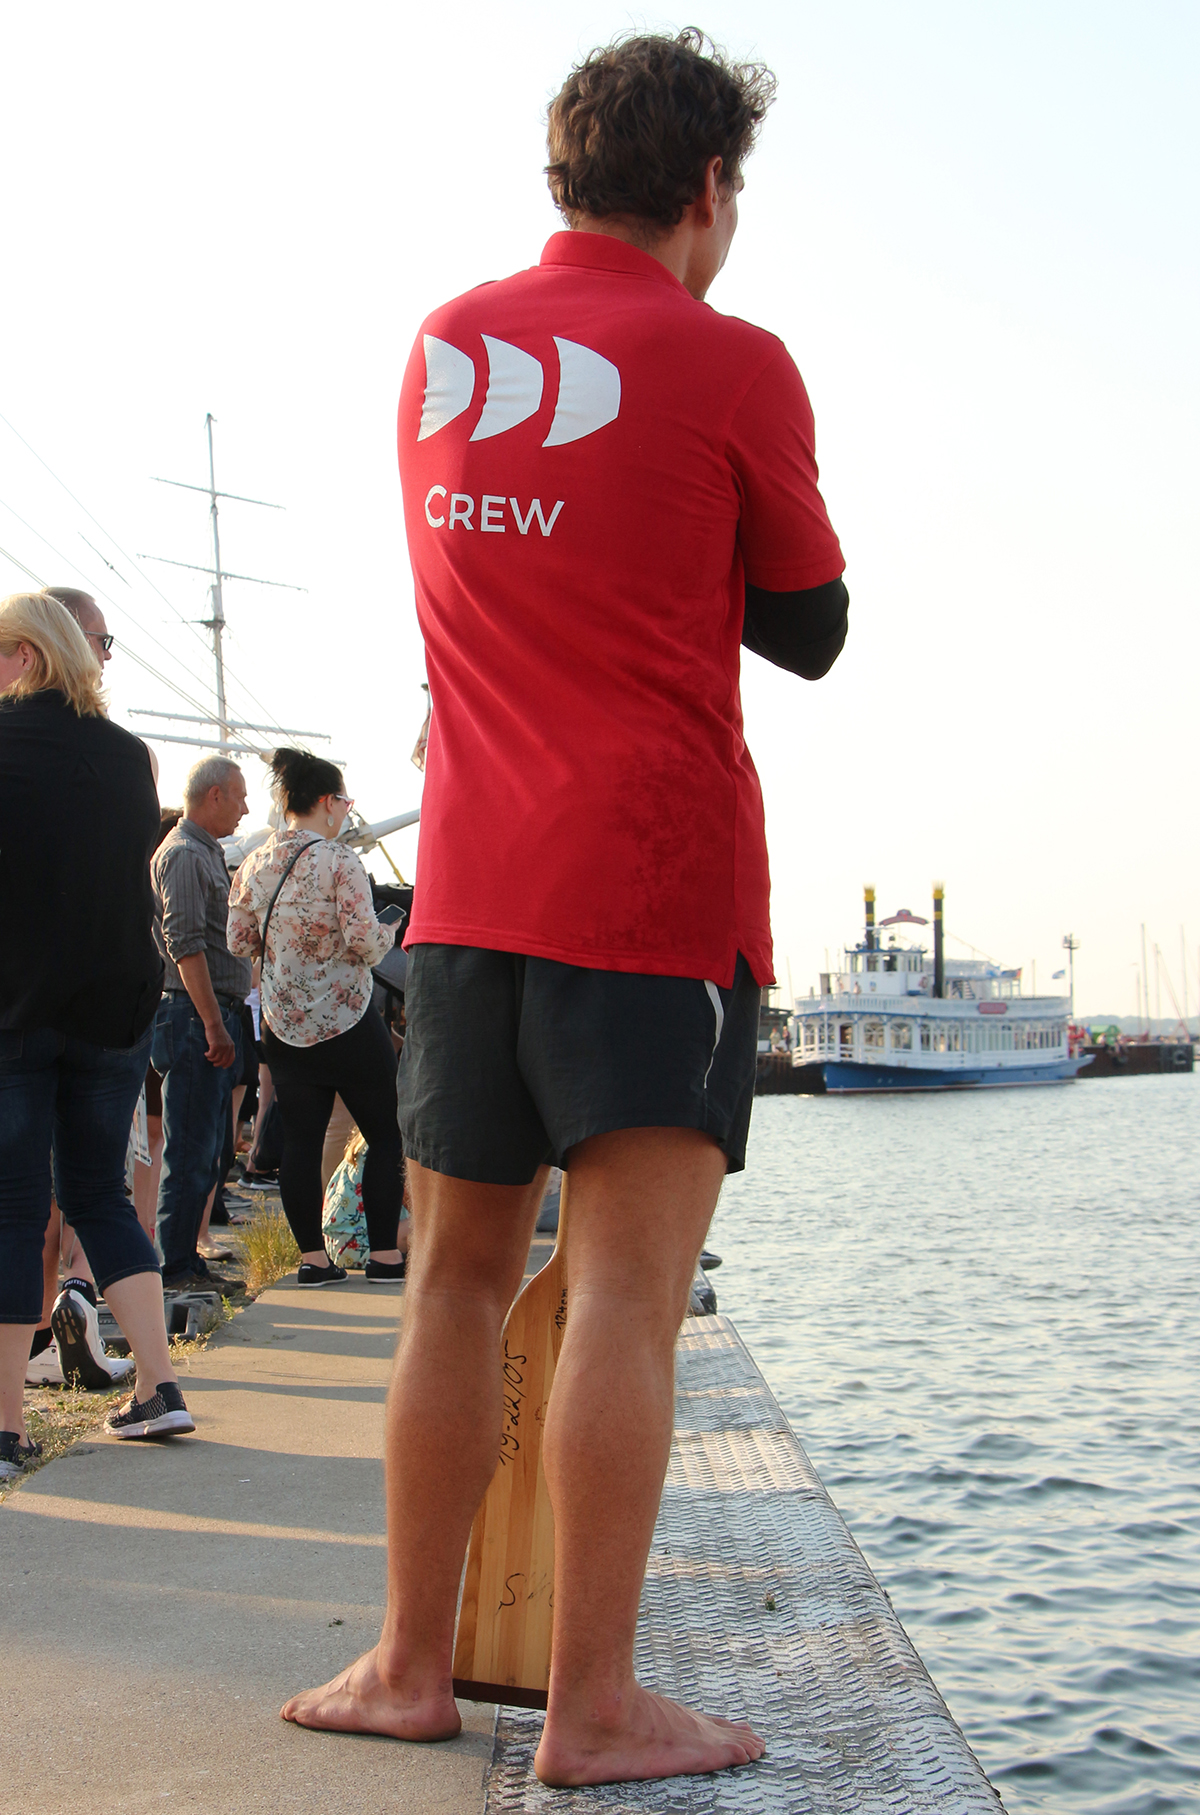 Drachenbootrennen Hafentage Stralsund 2018 - Freizeitteams